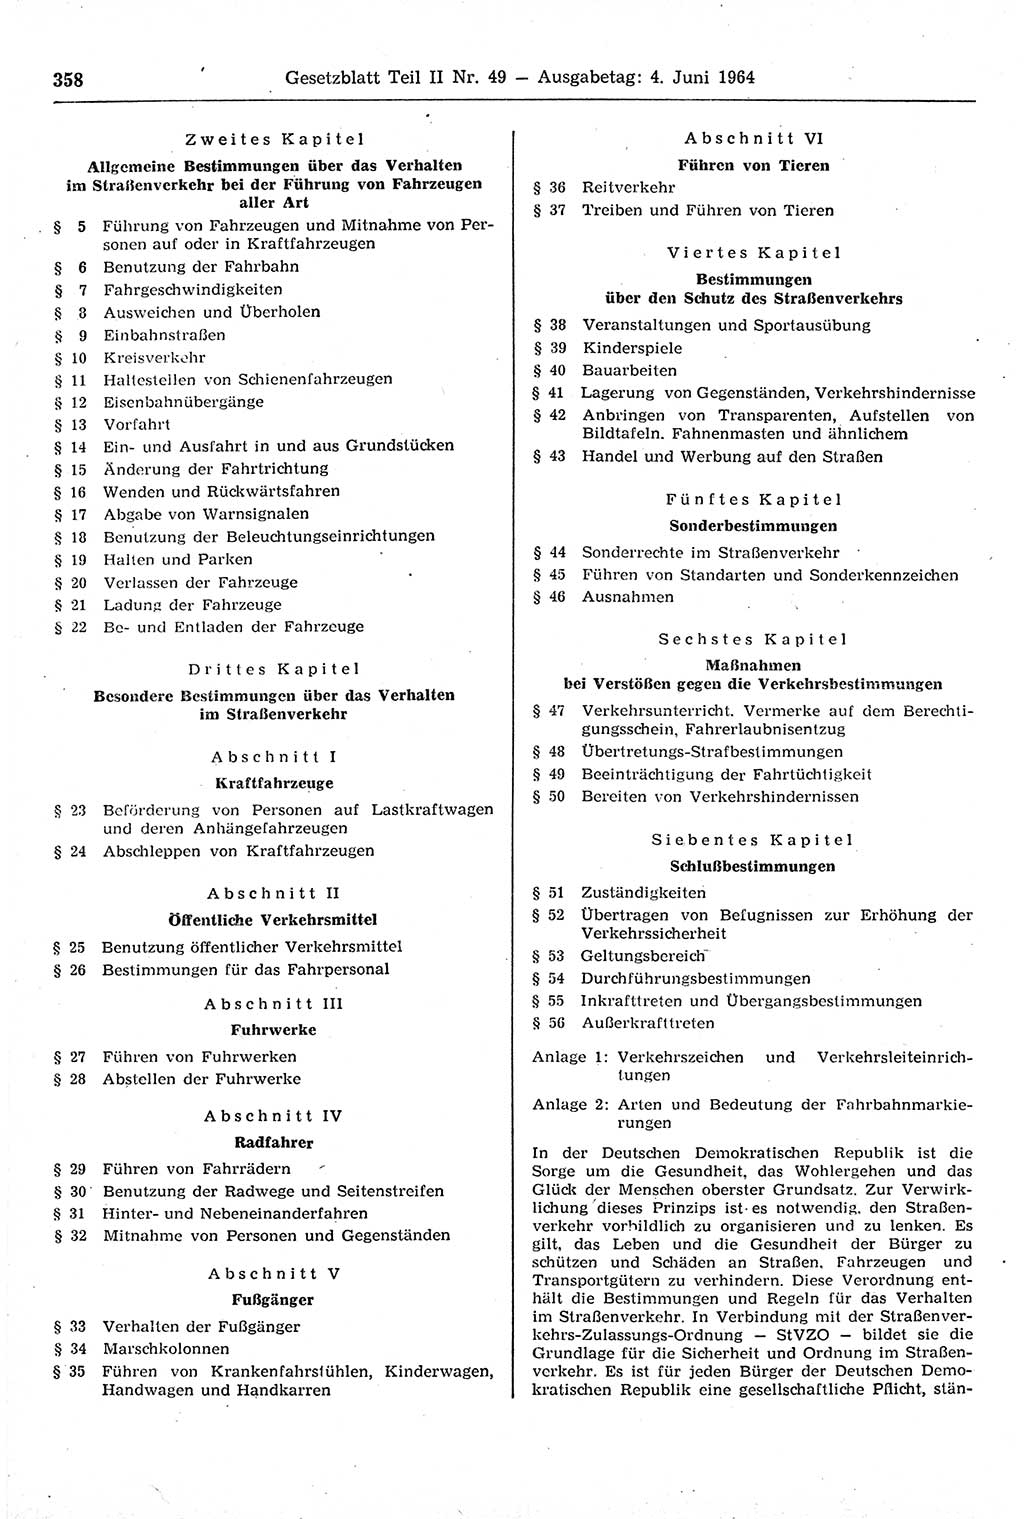 Gesetzblatt (GBl.) der Deutschen Demokratischen Republik (DDR) Teil ⅠⅠ 1964, Seite 358 (GBl. DDR ⅠⅠ 1964, S. 358)